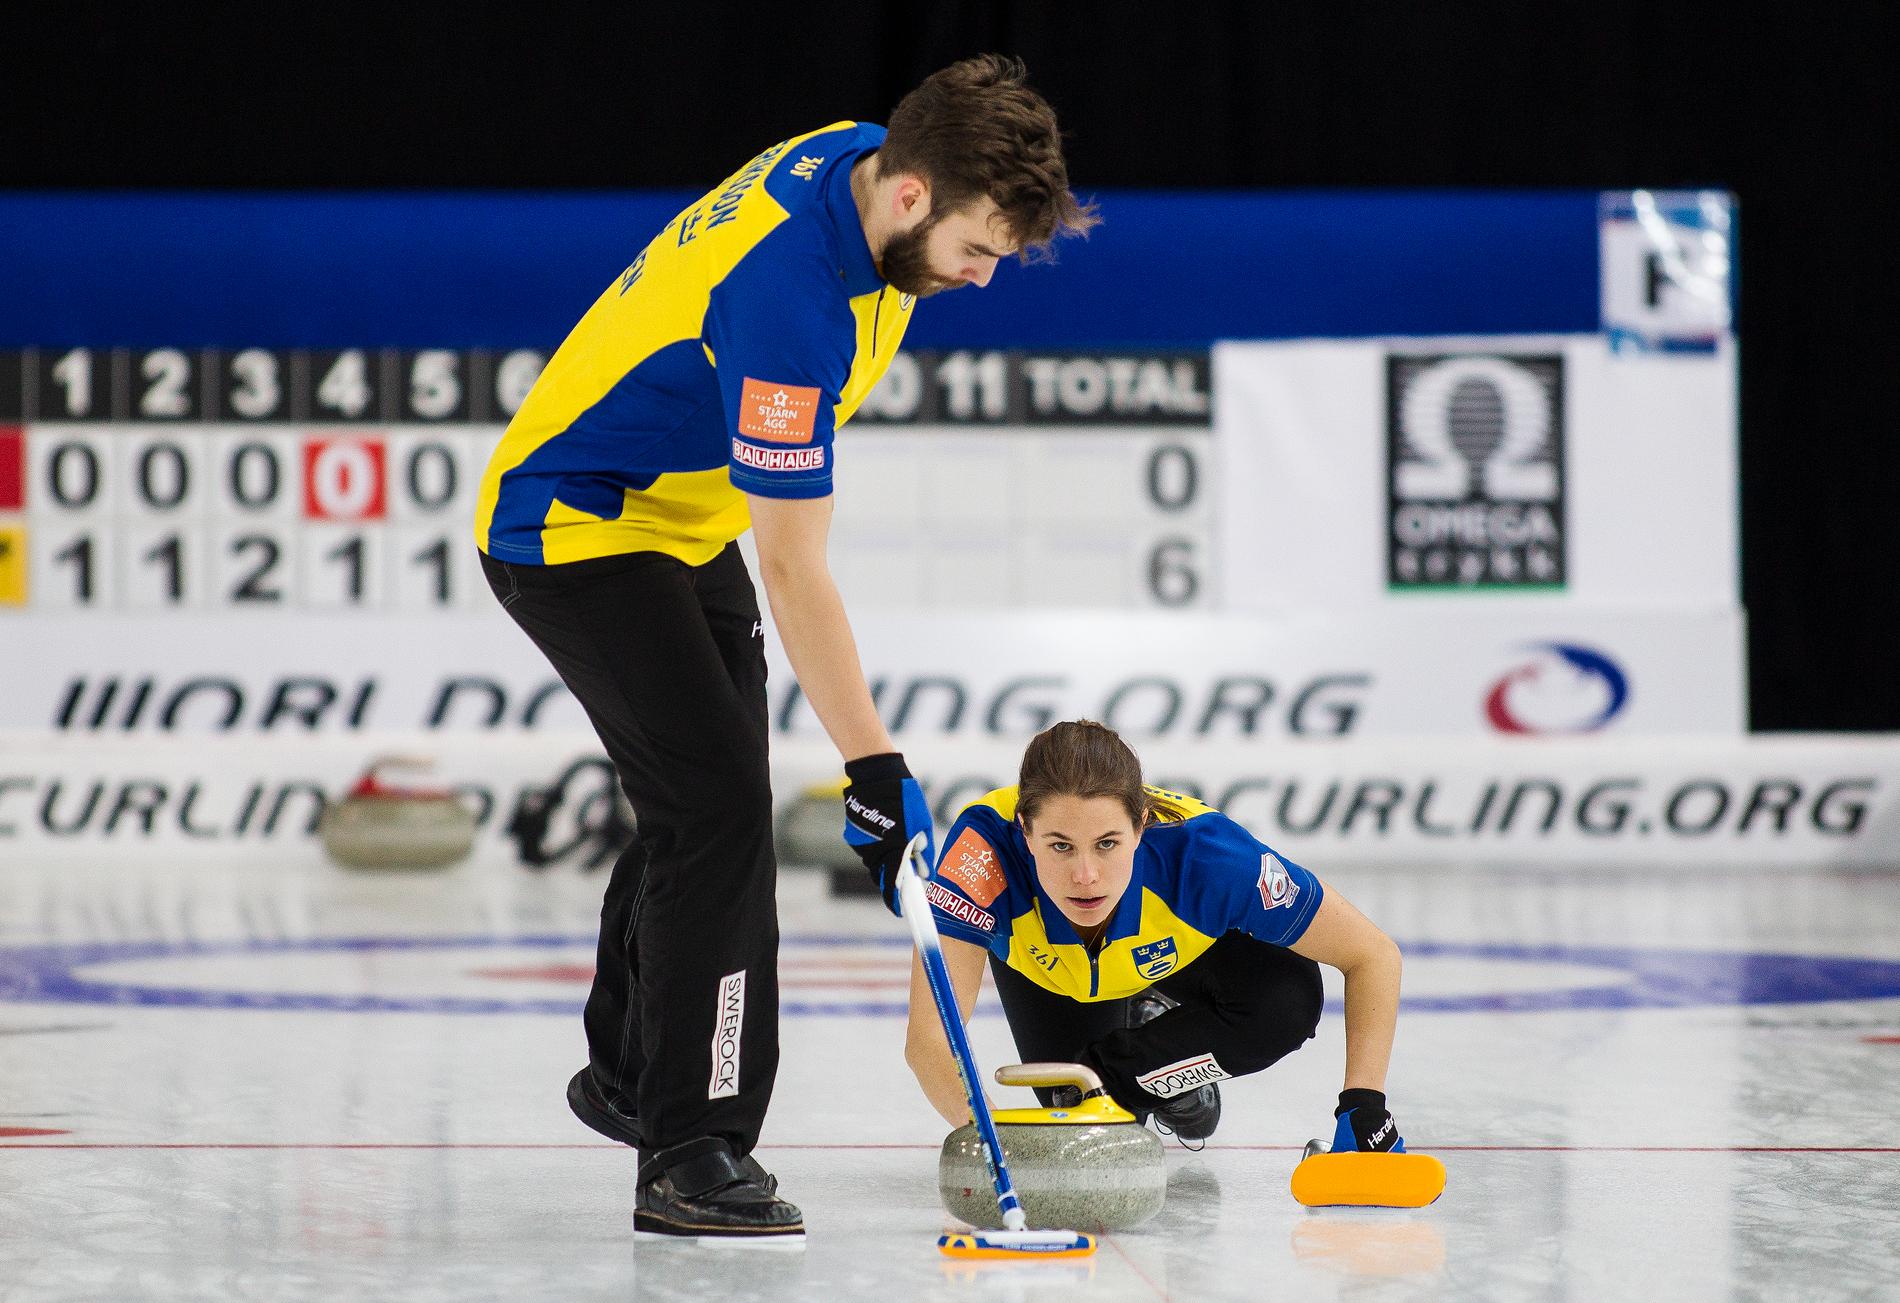 Anna Hasselborg och Oskar Eriksson under curling-VM i Stavanger.